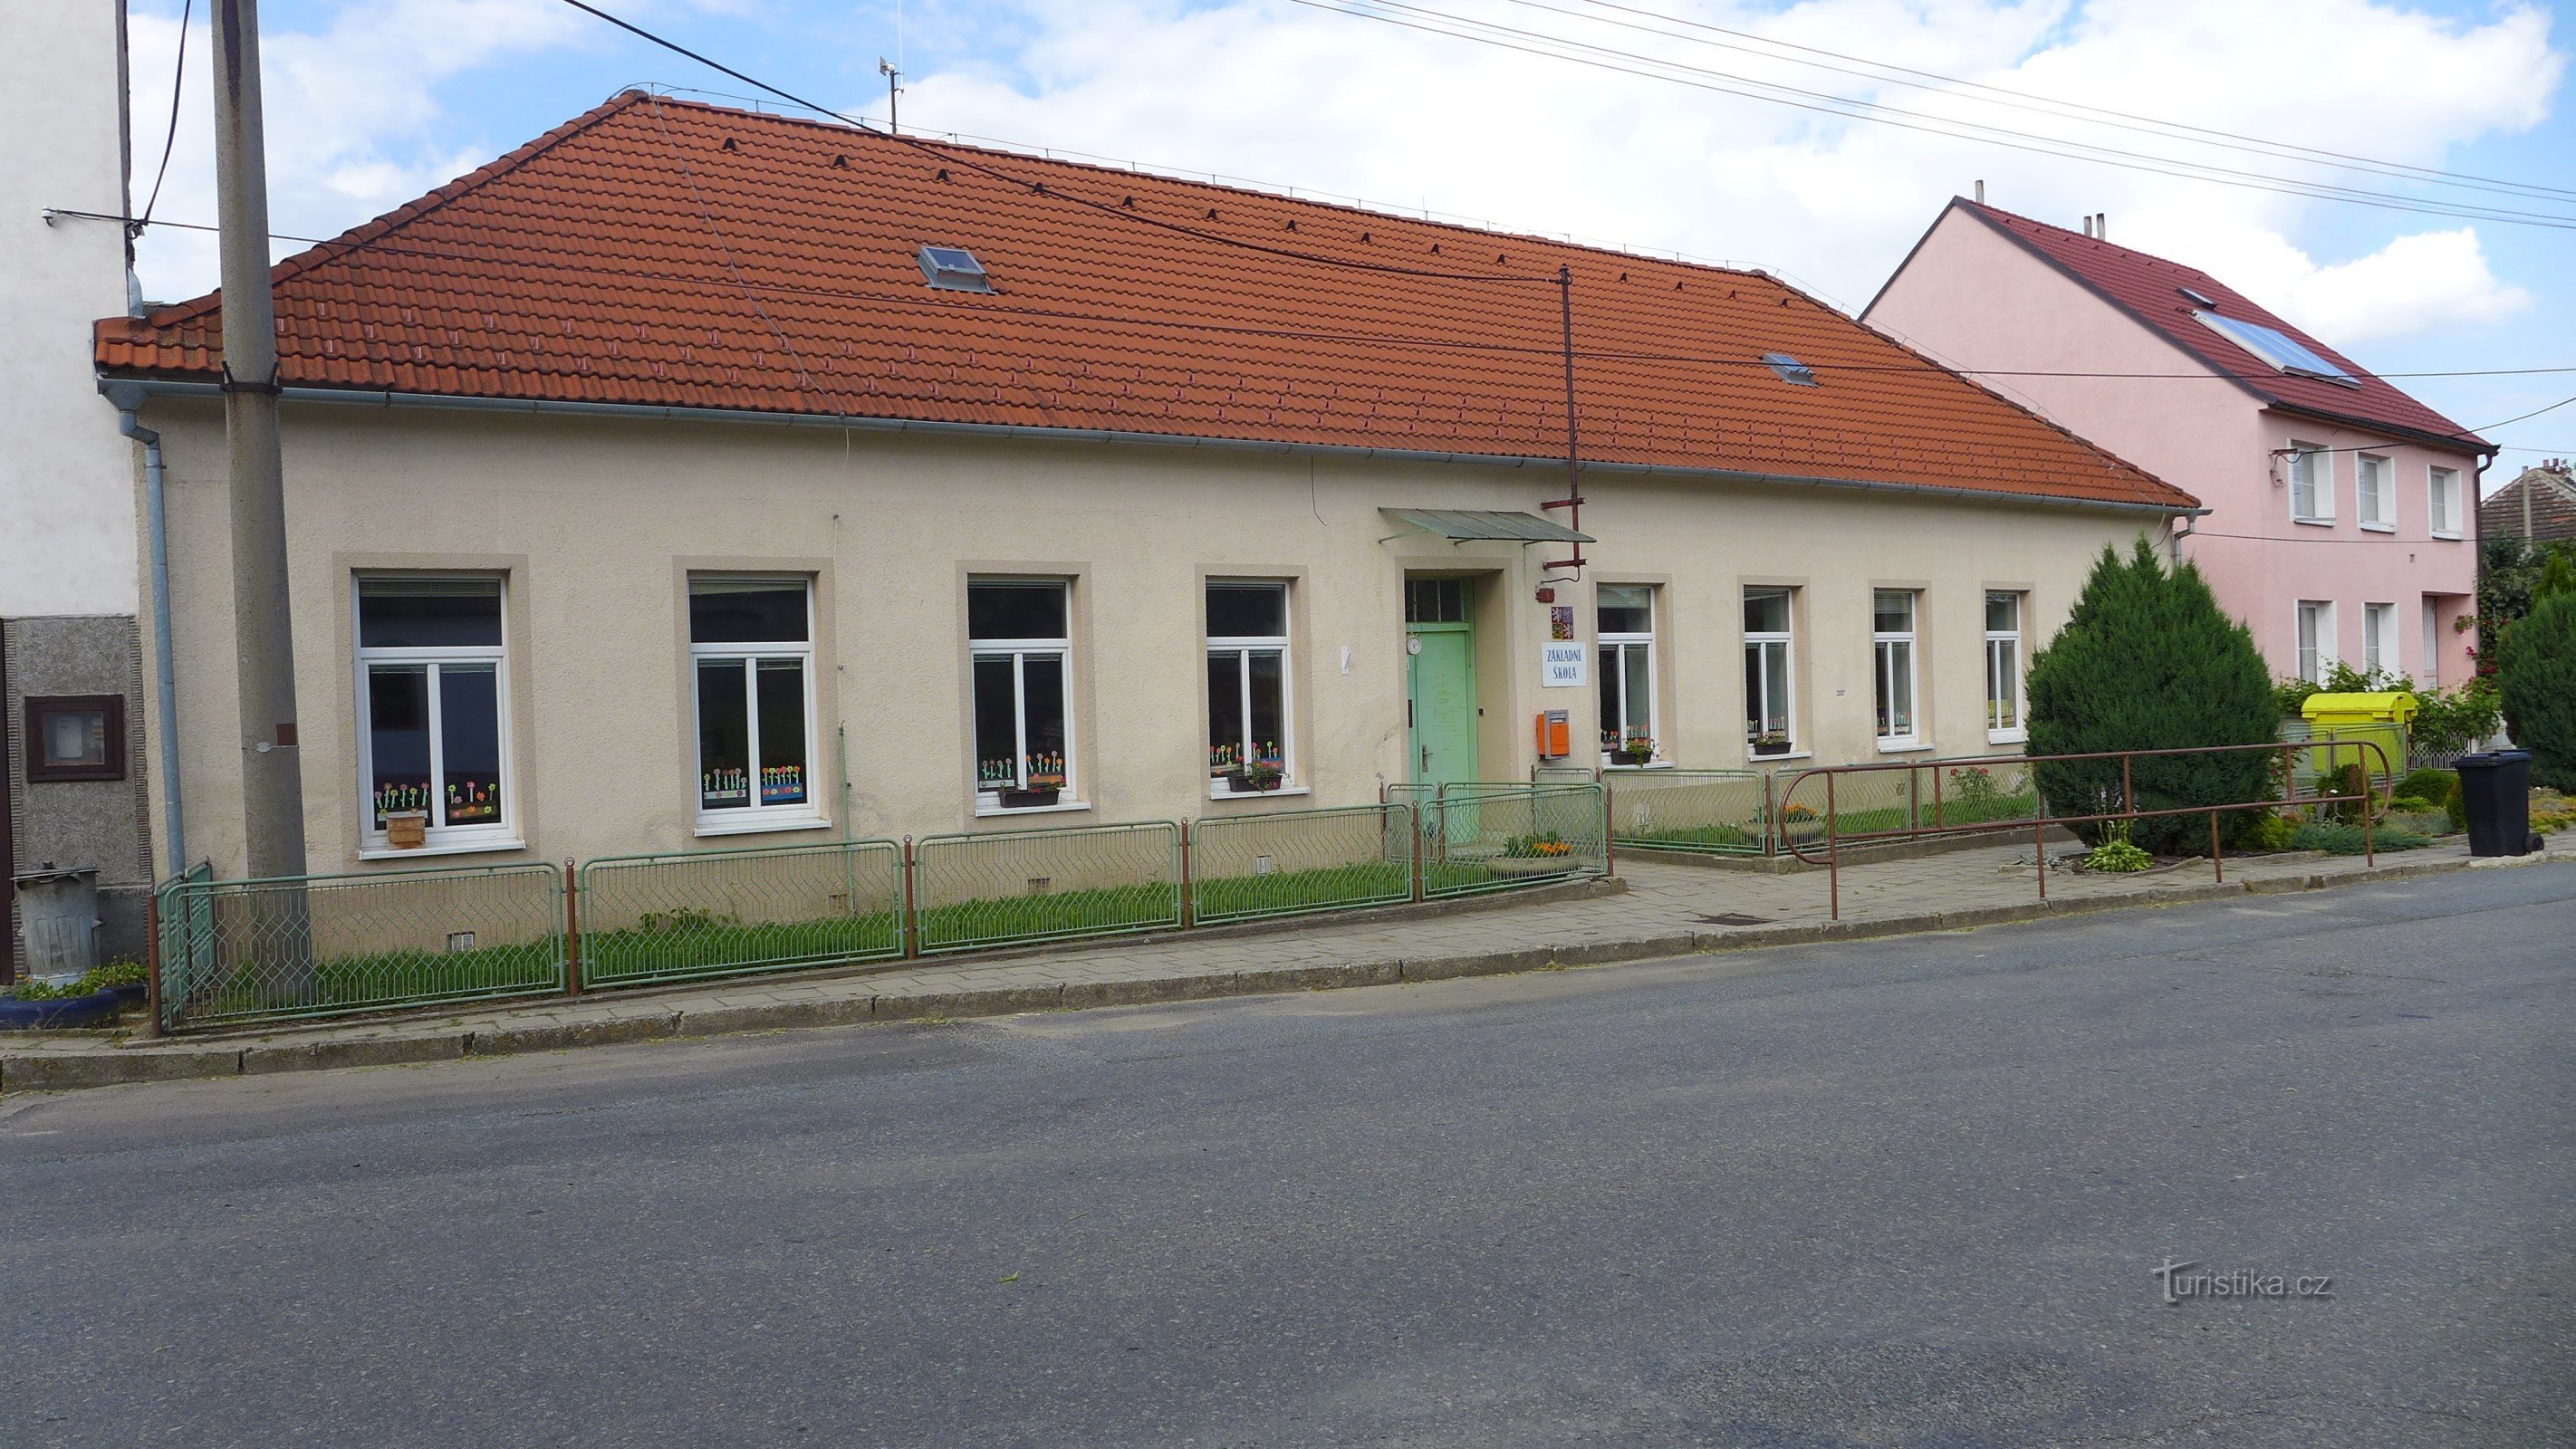 Dolní Vilémovice - elementary school